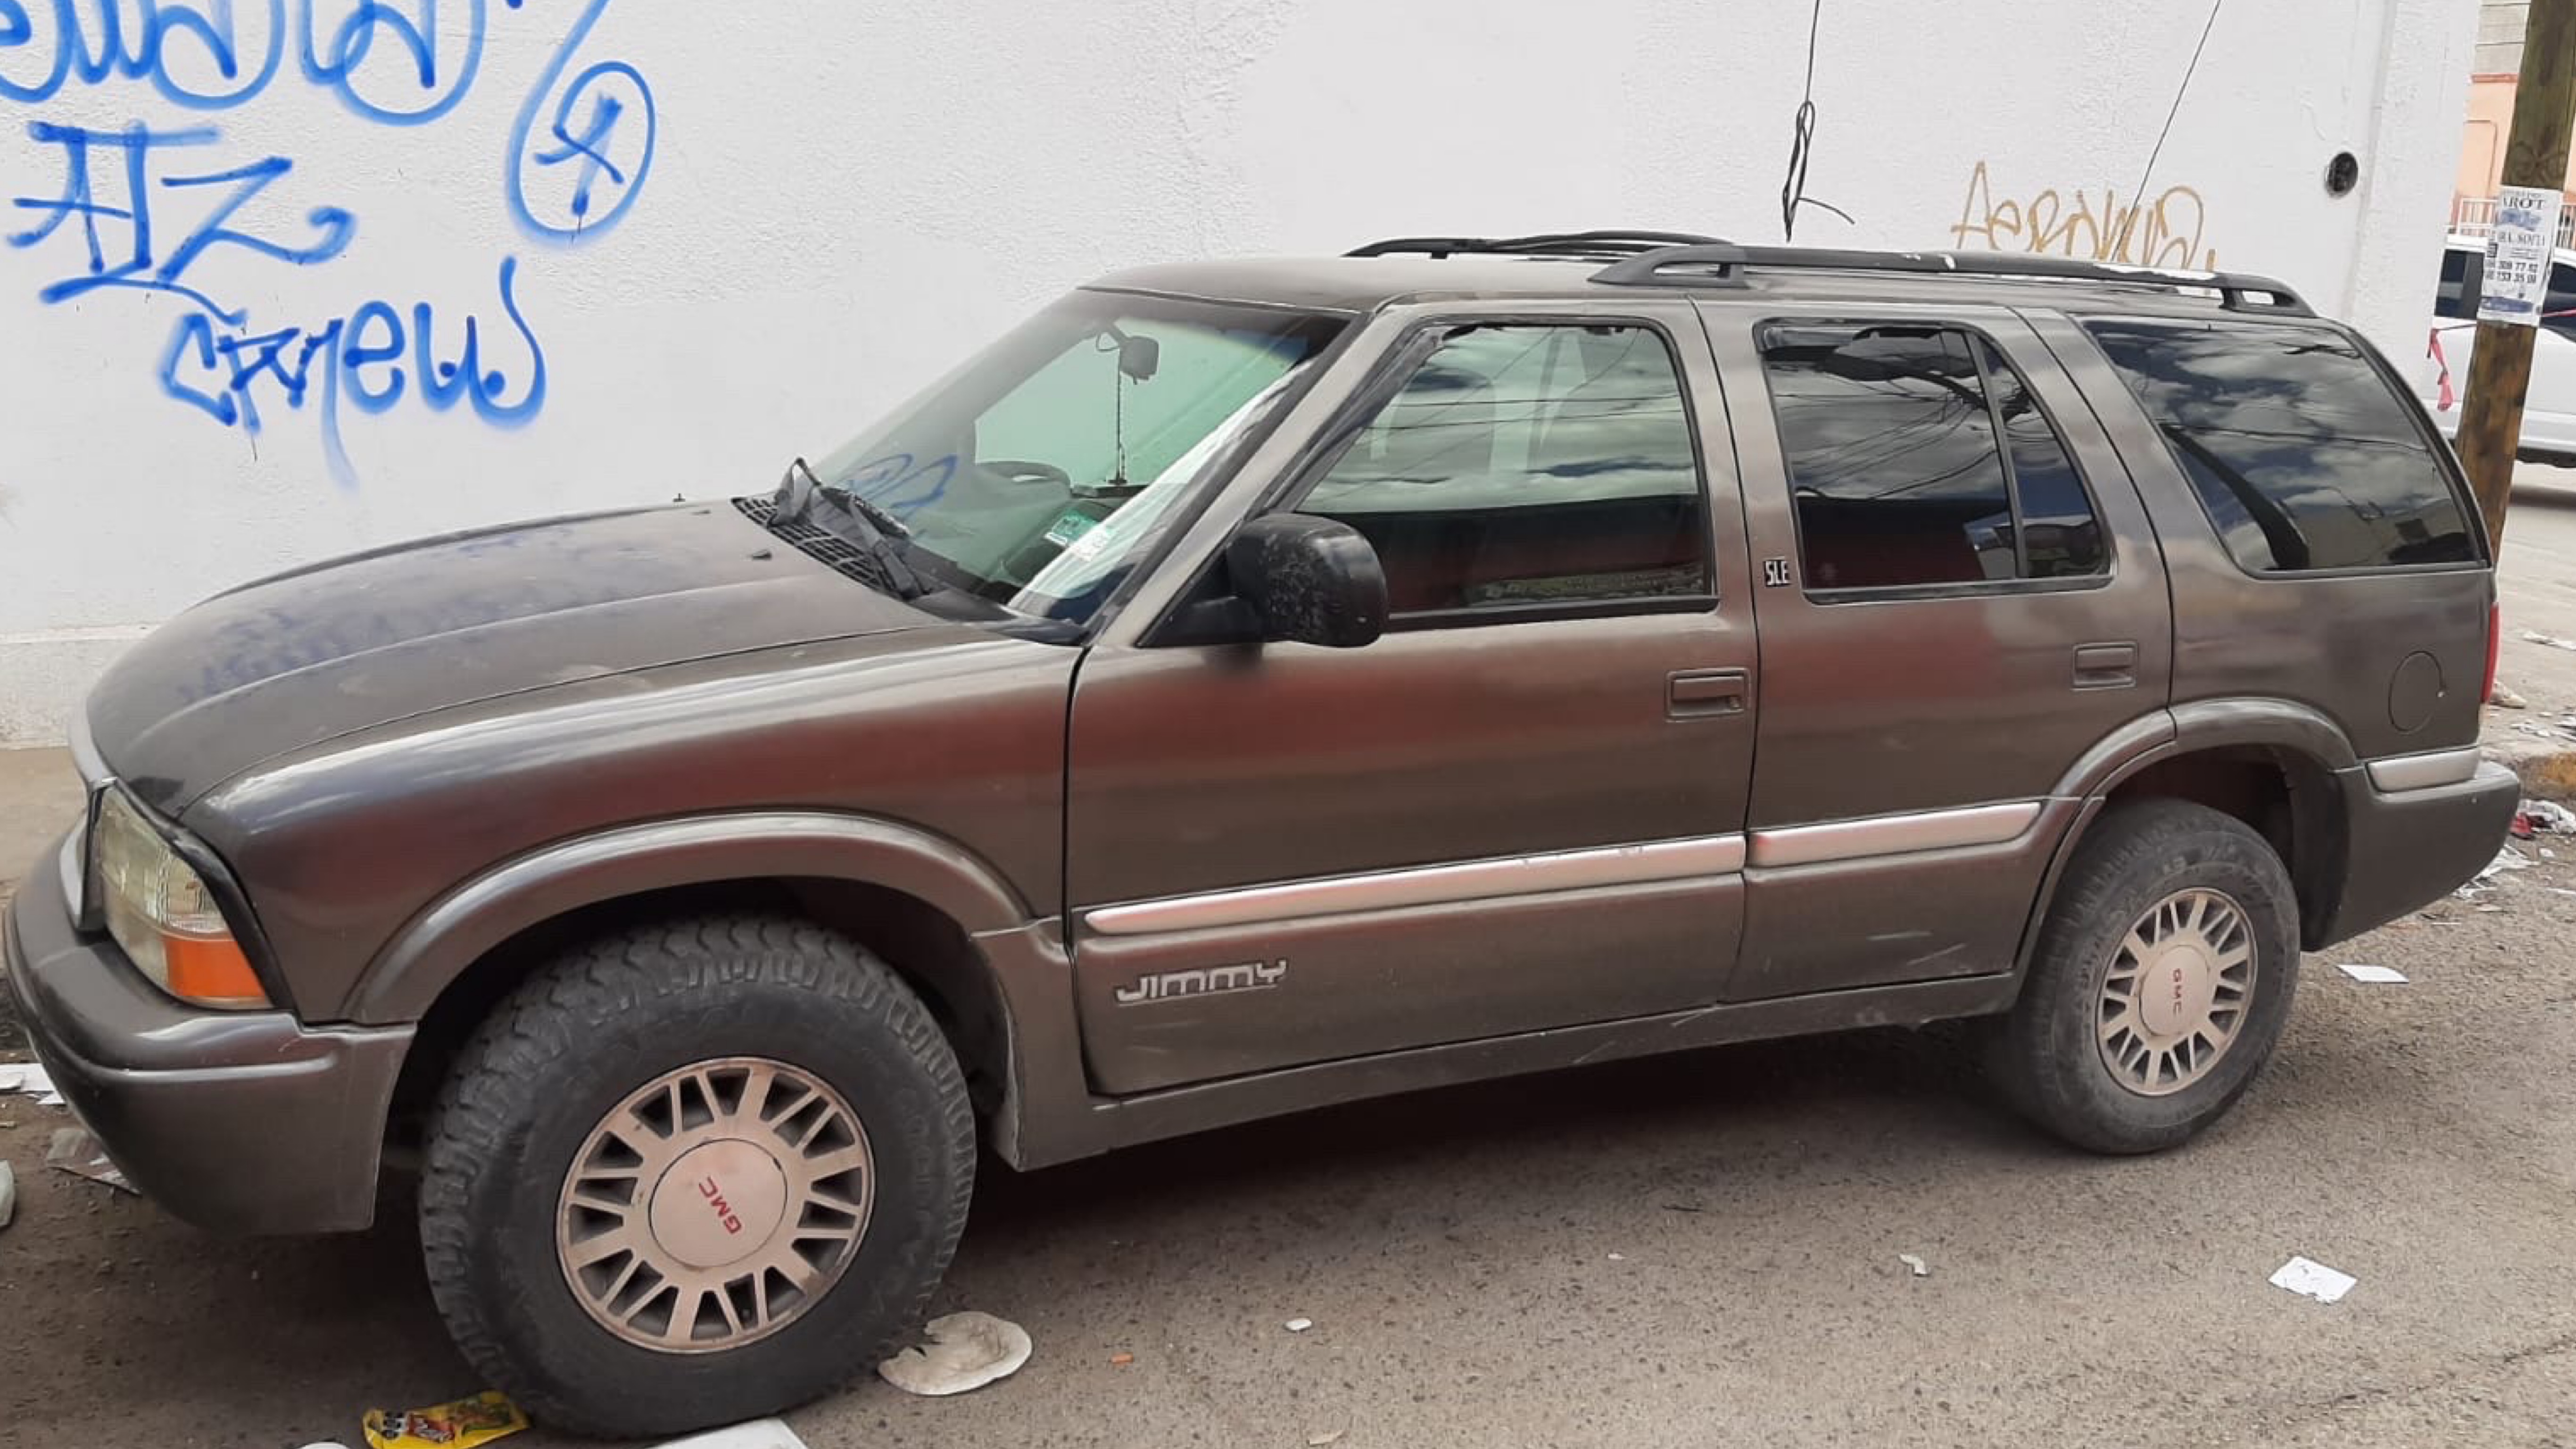 Vehiculo-decomisado-en-casa-de-seguridad-en-Ciudad-Juarez-Chihuahua